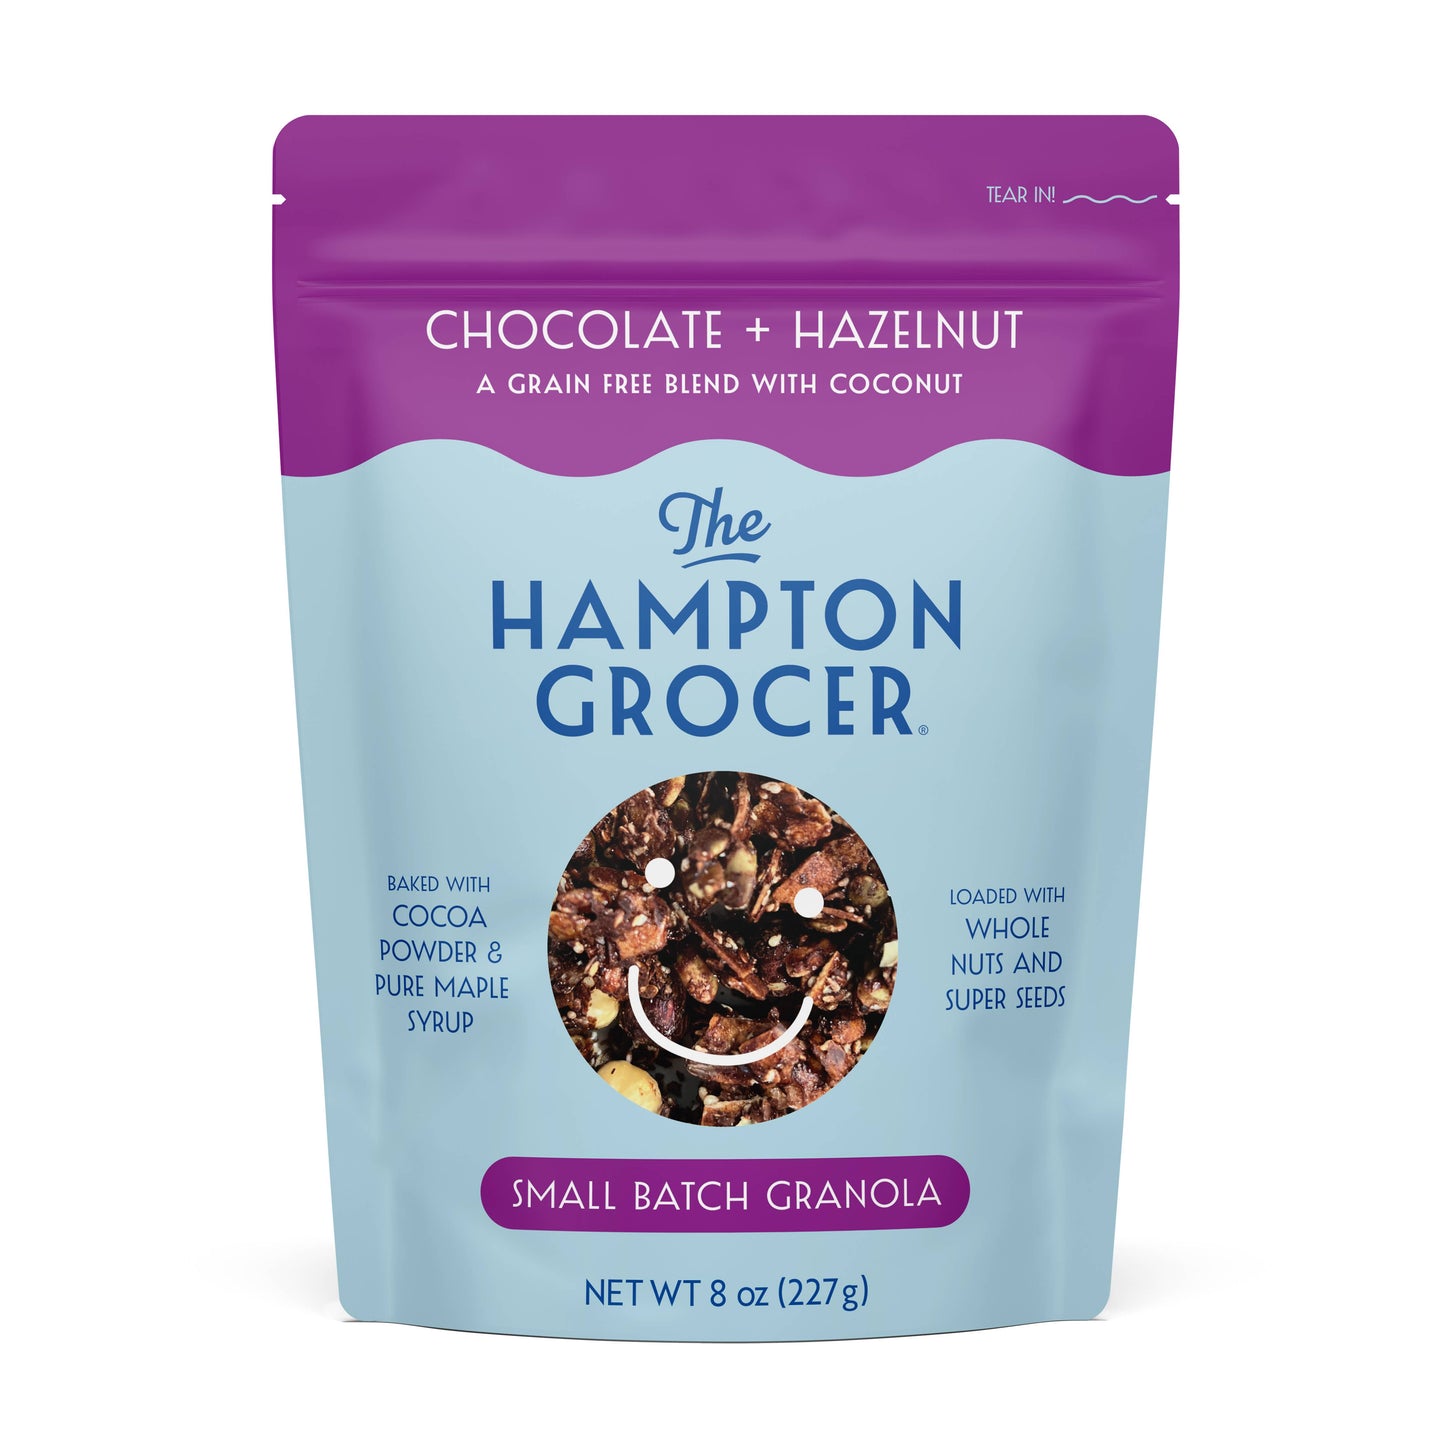 Chocolate + Hazelnut Grain Free